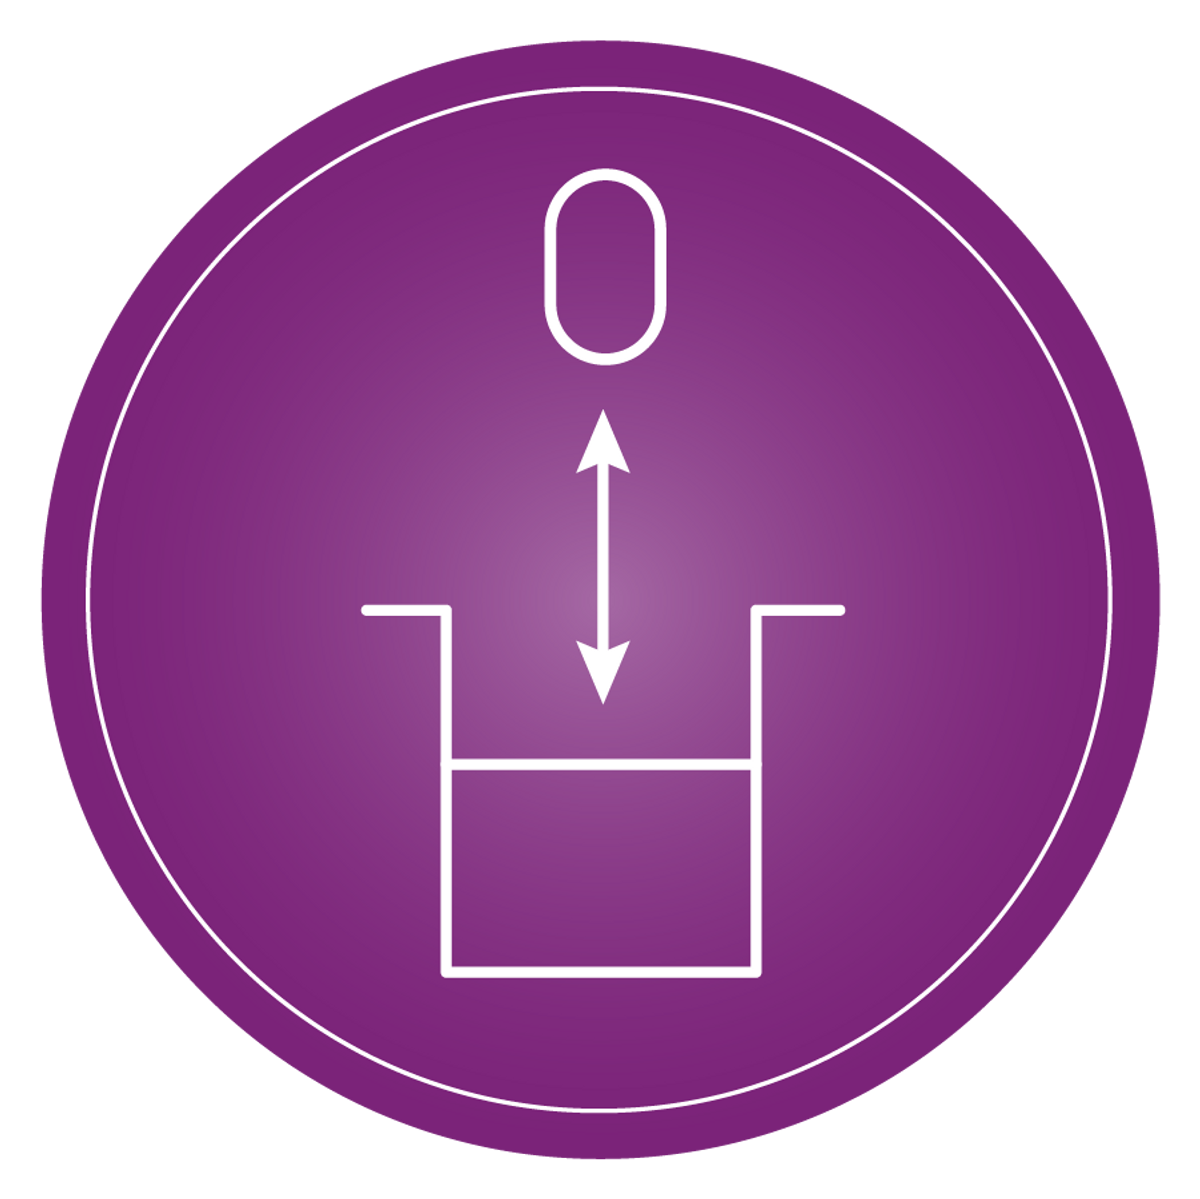 Icon representing focus adjustment